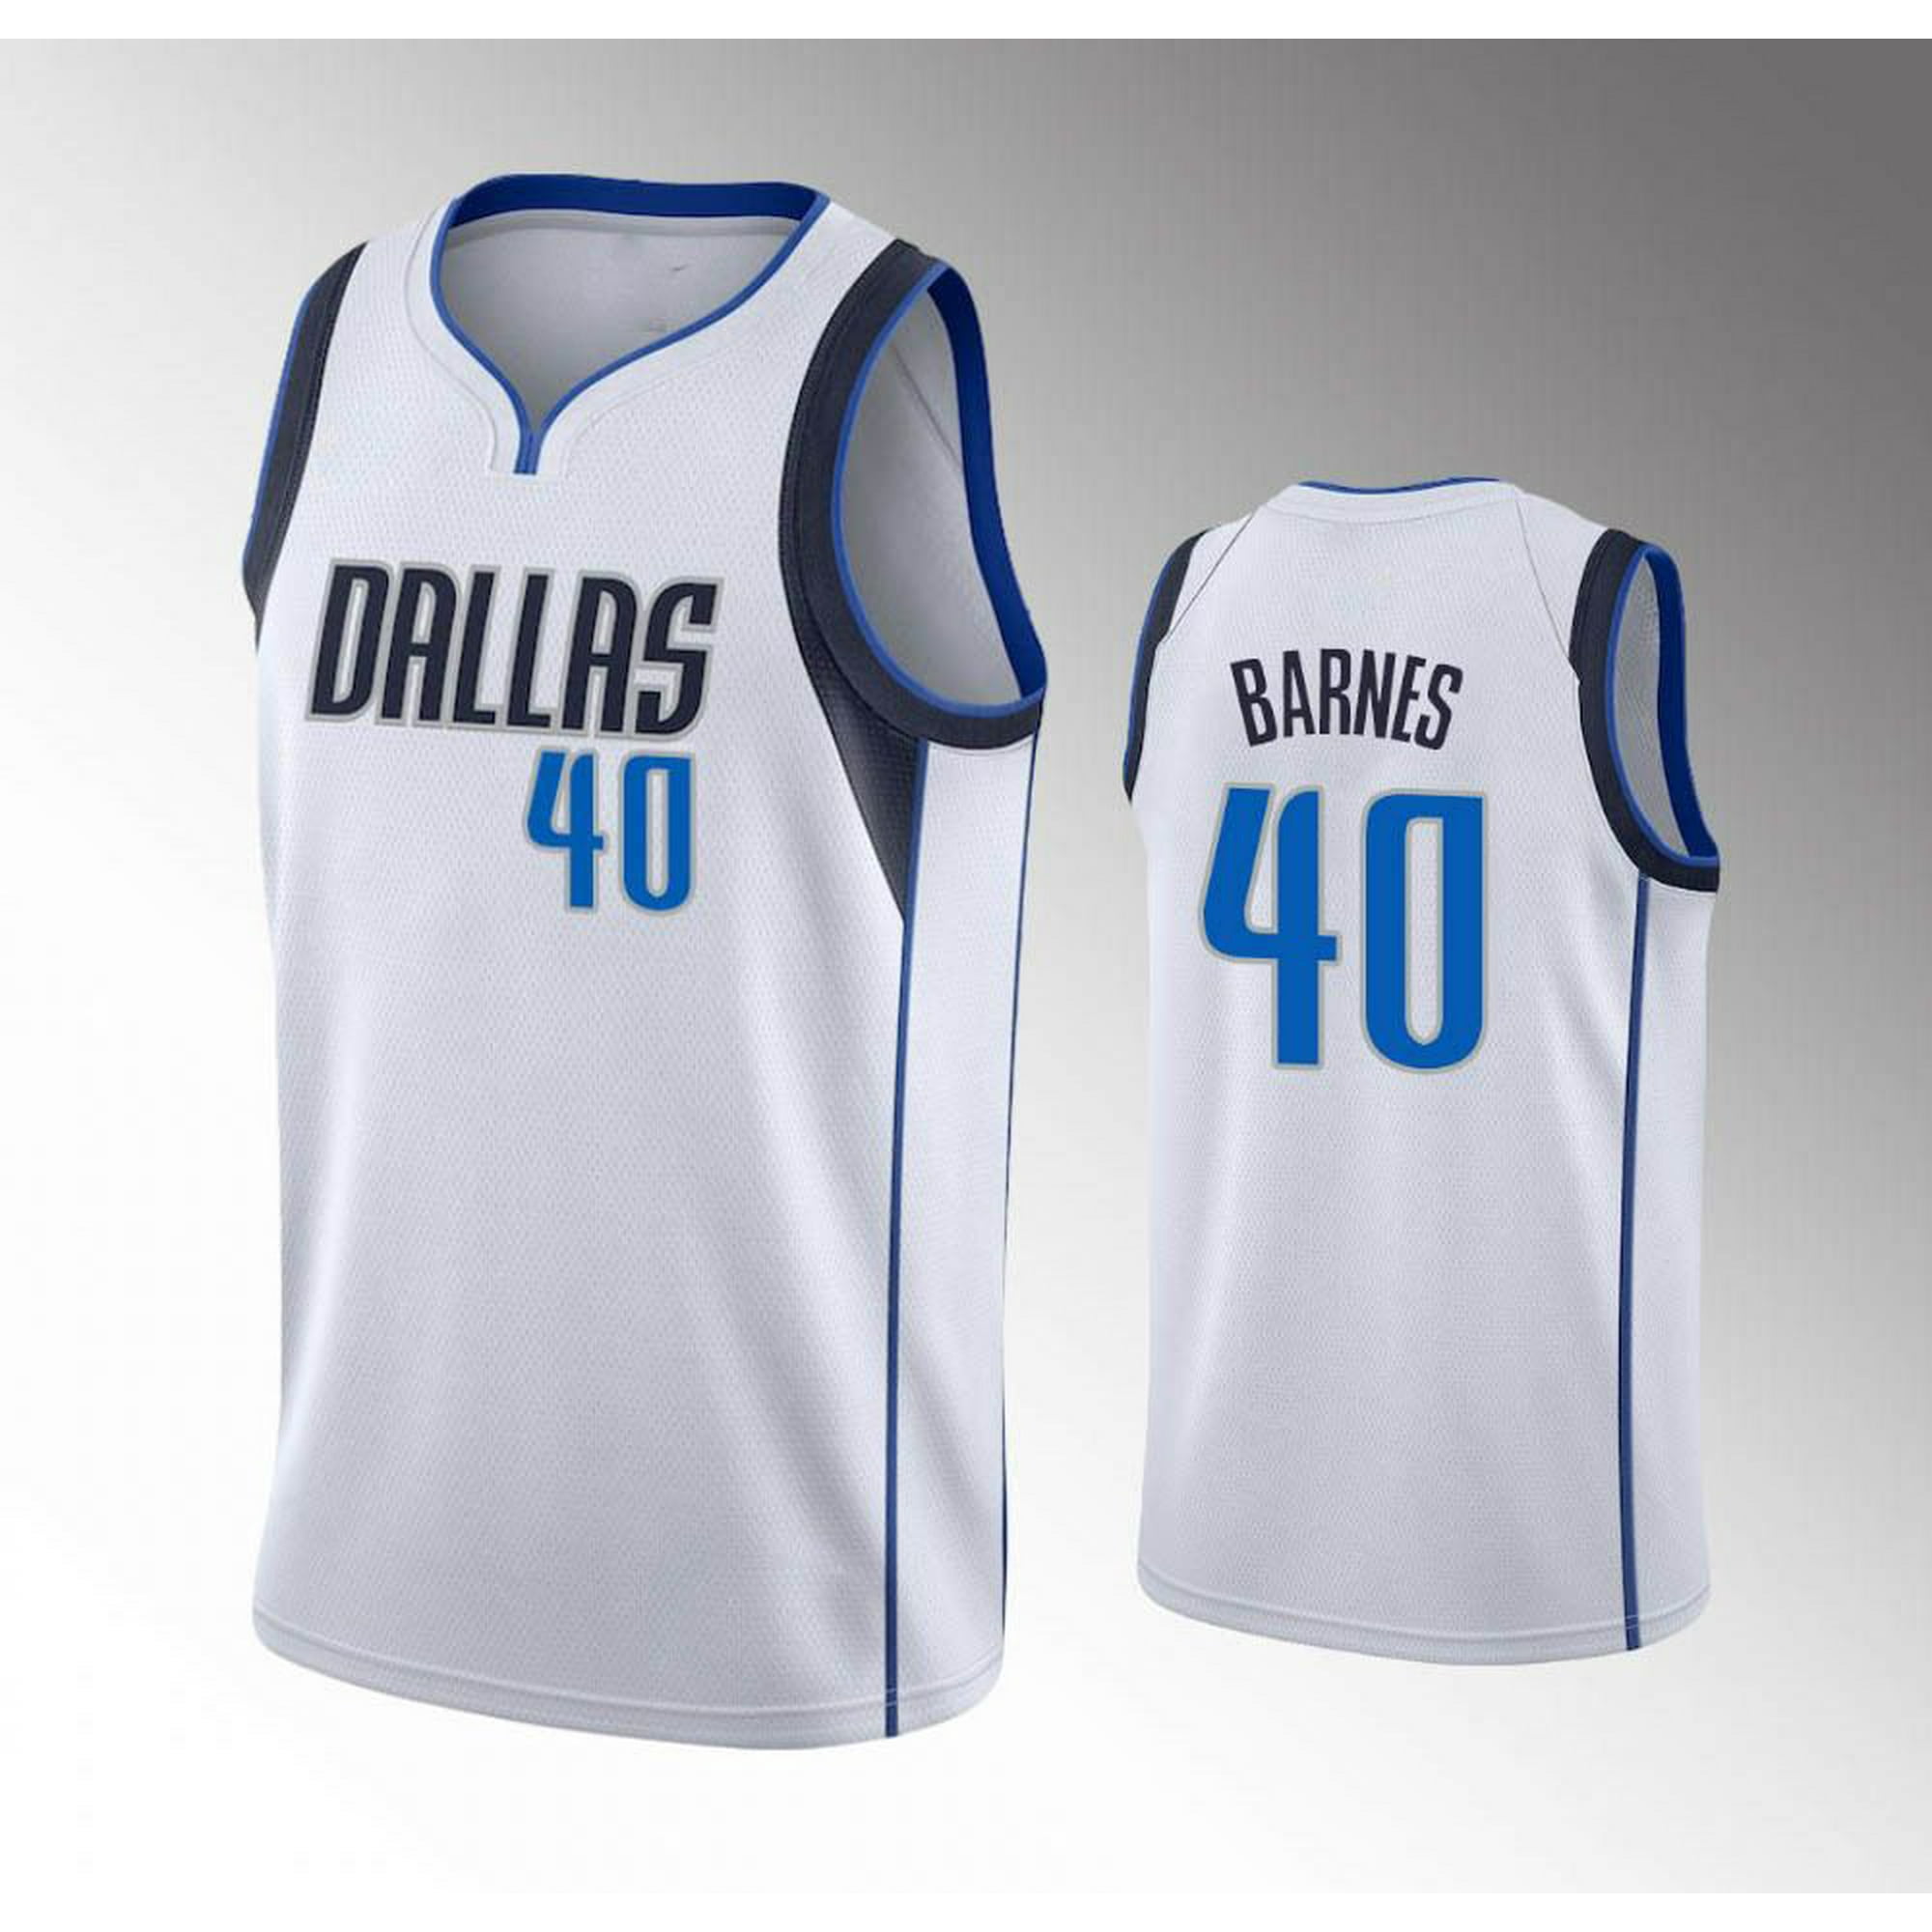 Dallas Mavericks Custom Jerseys, Mavericks Jersey, Dallas Mavericks  Uniforms